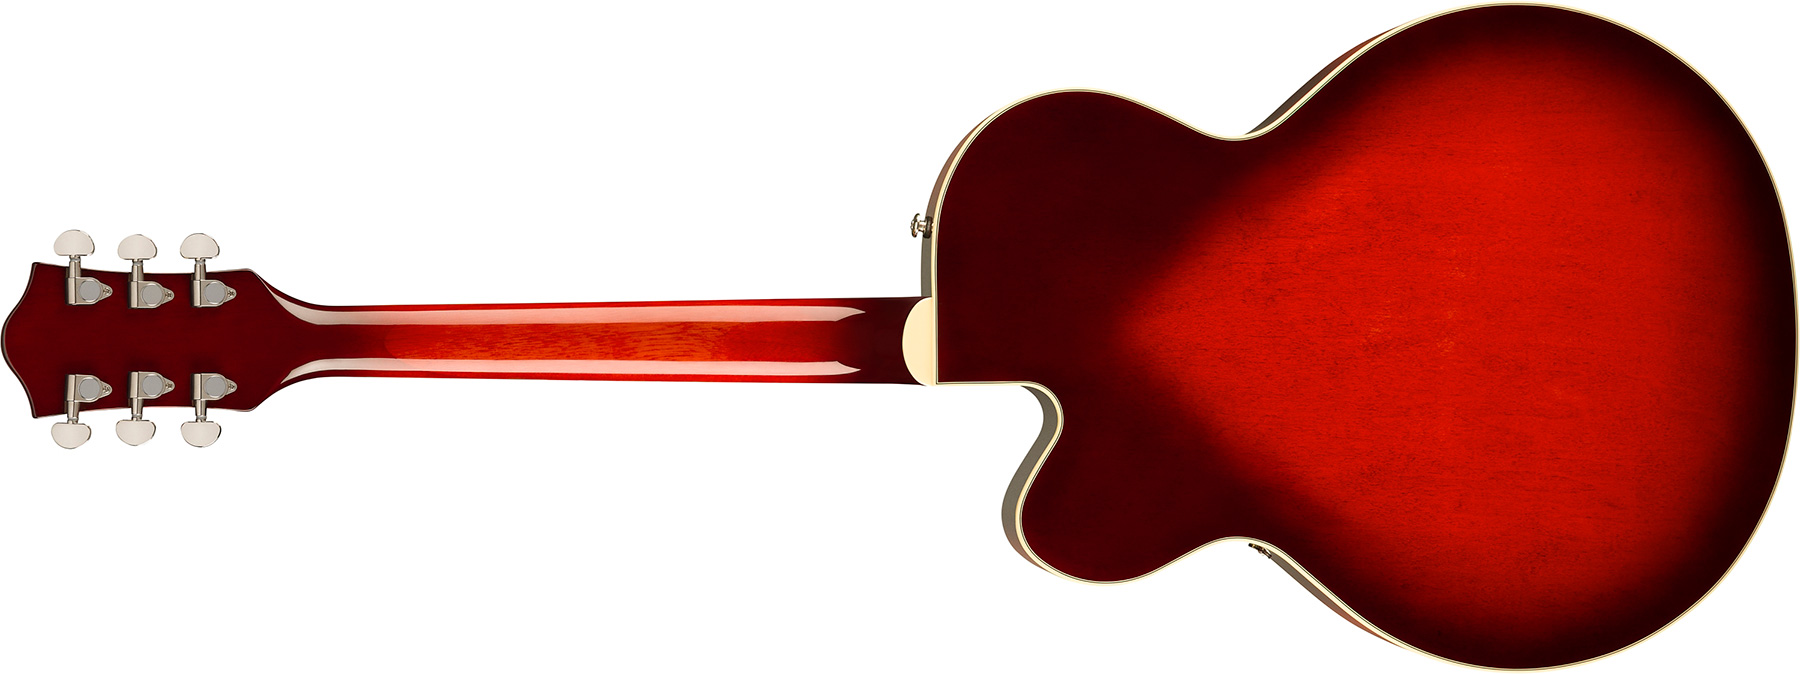 Gretsch G2420 Tailpiece Streamliner Hollow Body 2h Ht Lau - Claret Burst - Hollow bodytock elektrische gitaar - Variation 1